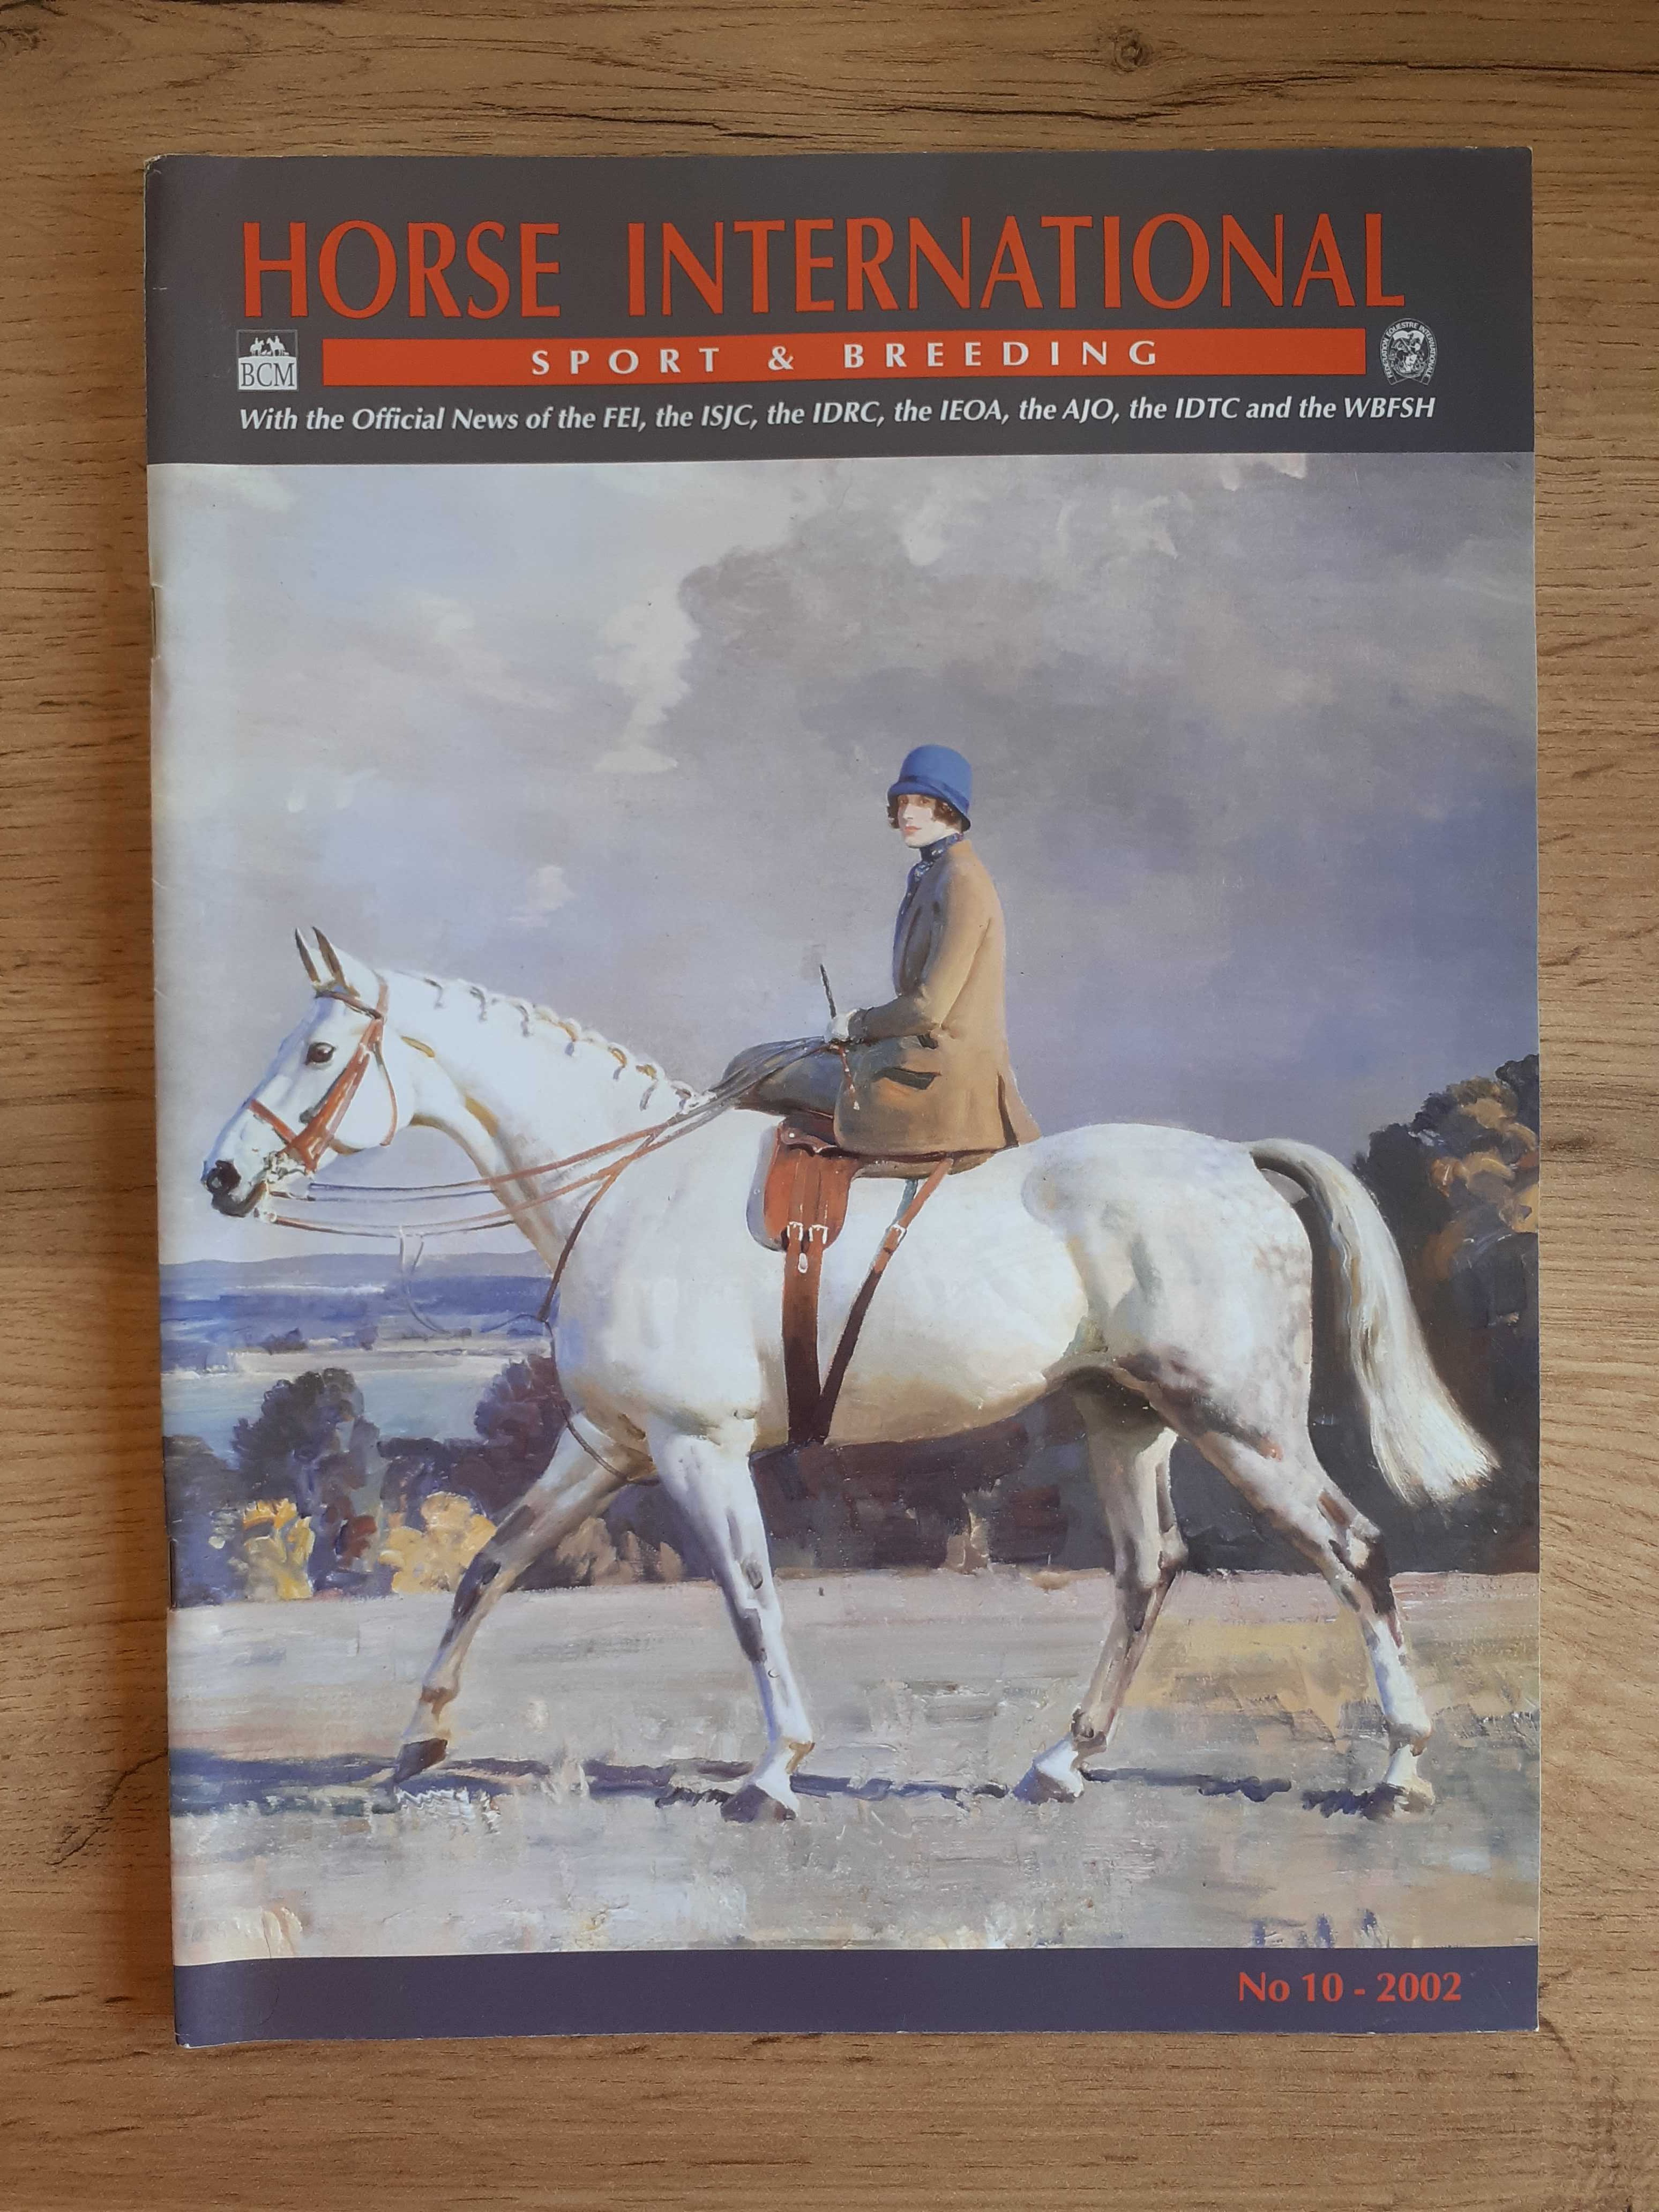 Horse International czasopismo jeździeckie, j.angielski. Konie, sport